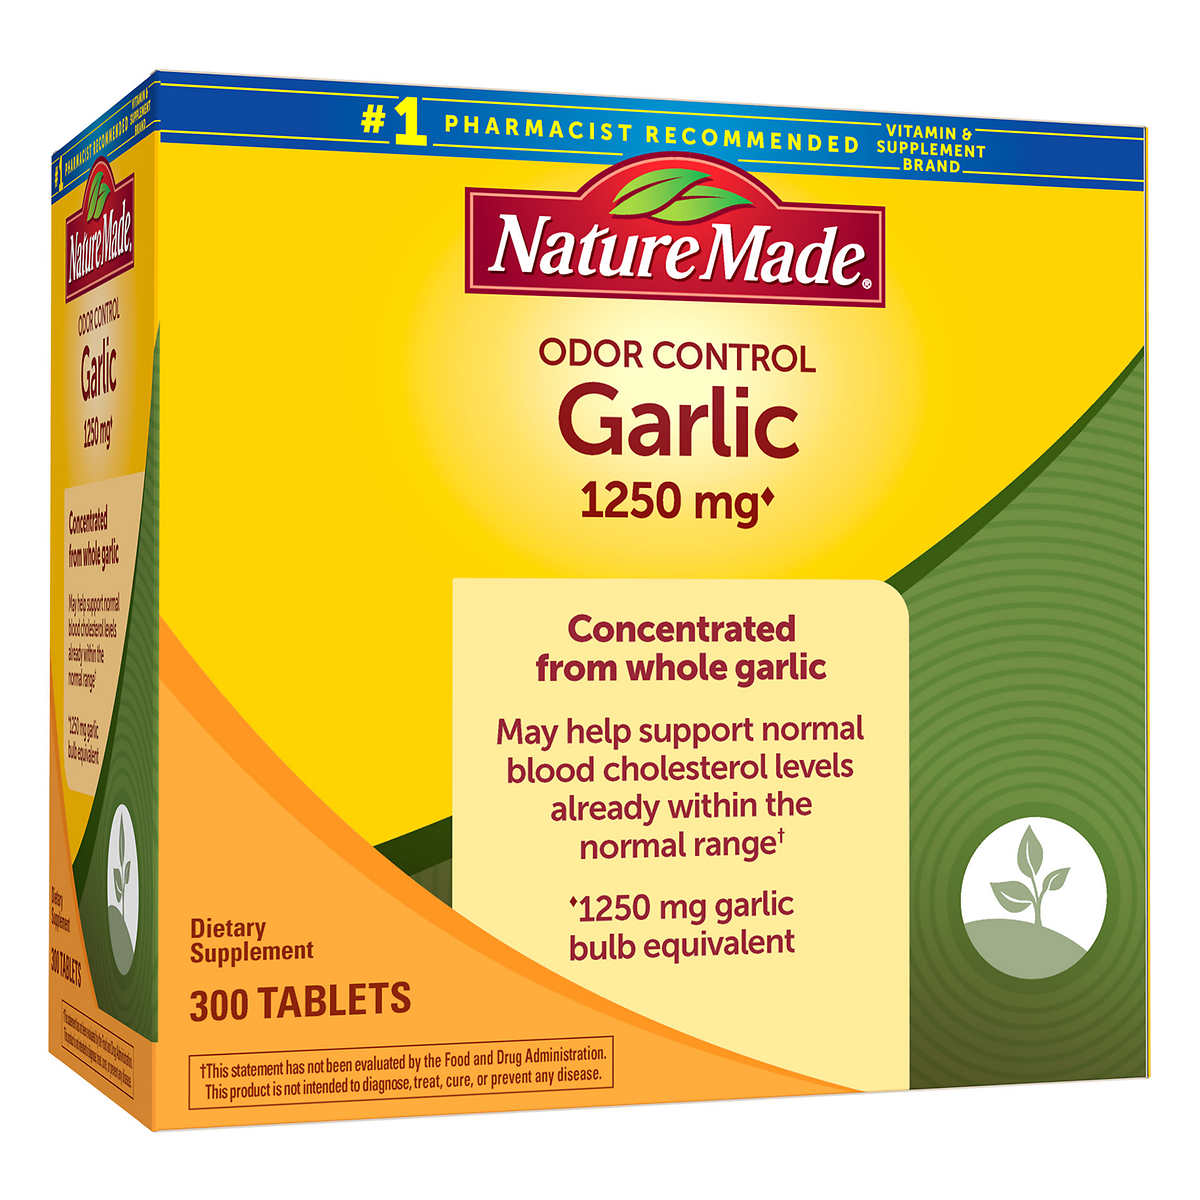 Tinh dầu tỏi Nature Made Odor Control Garlic 1250mg của Mỹ được chiết xuất từ tỏi tươi